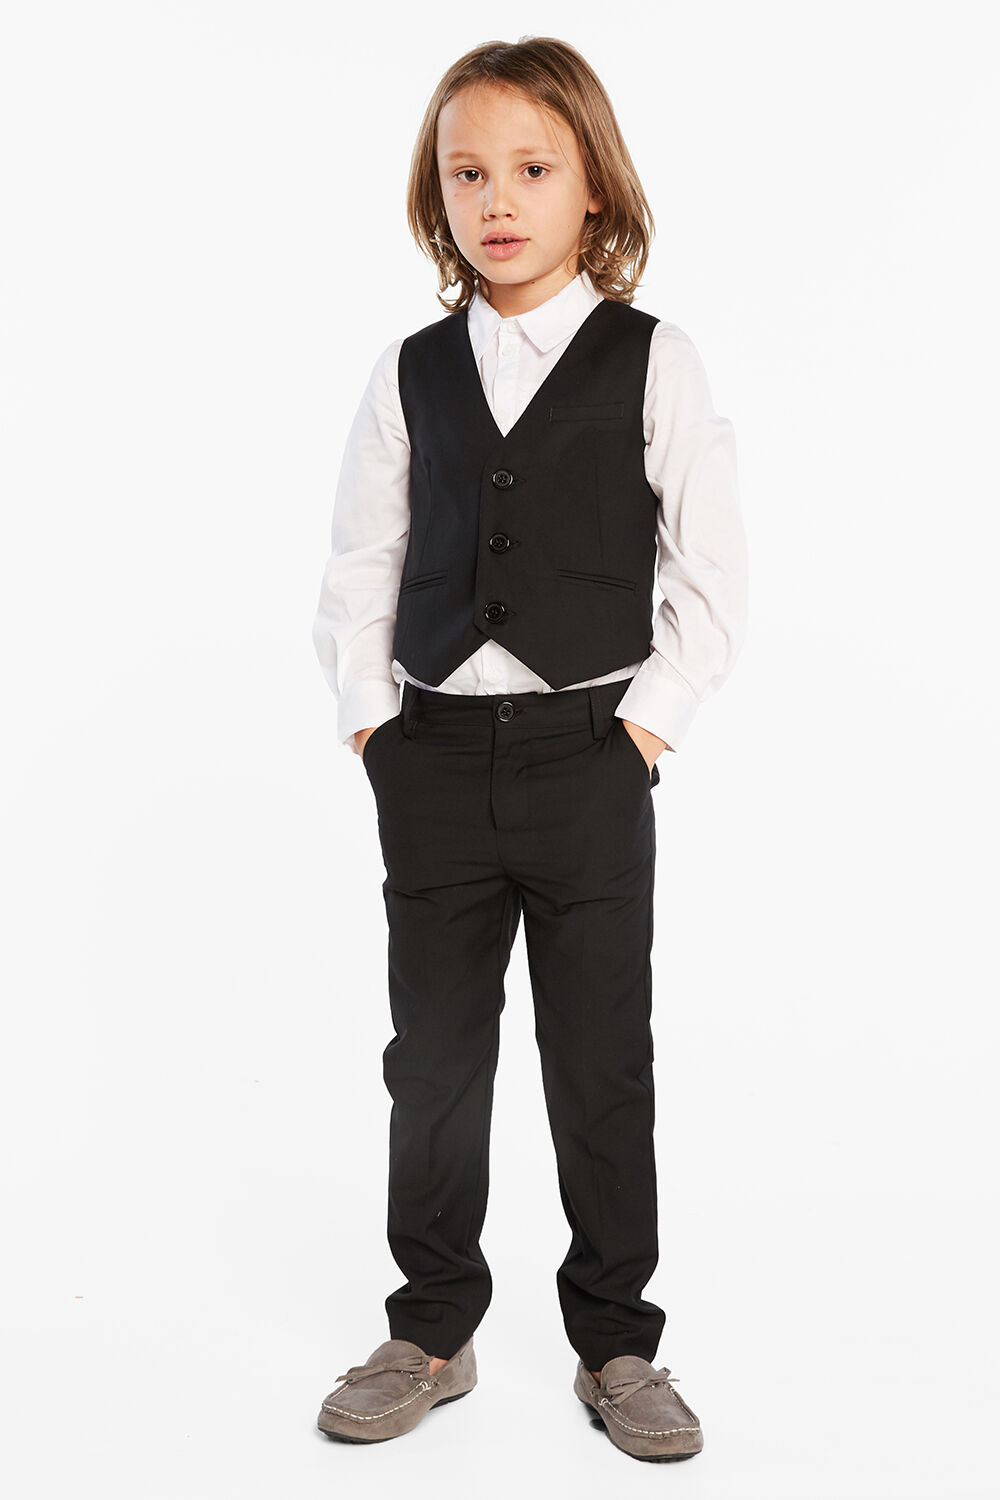 Oscar Suit Vest | Junior Boys 2-10 Suits | Bardot Junior